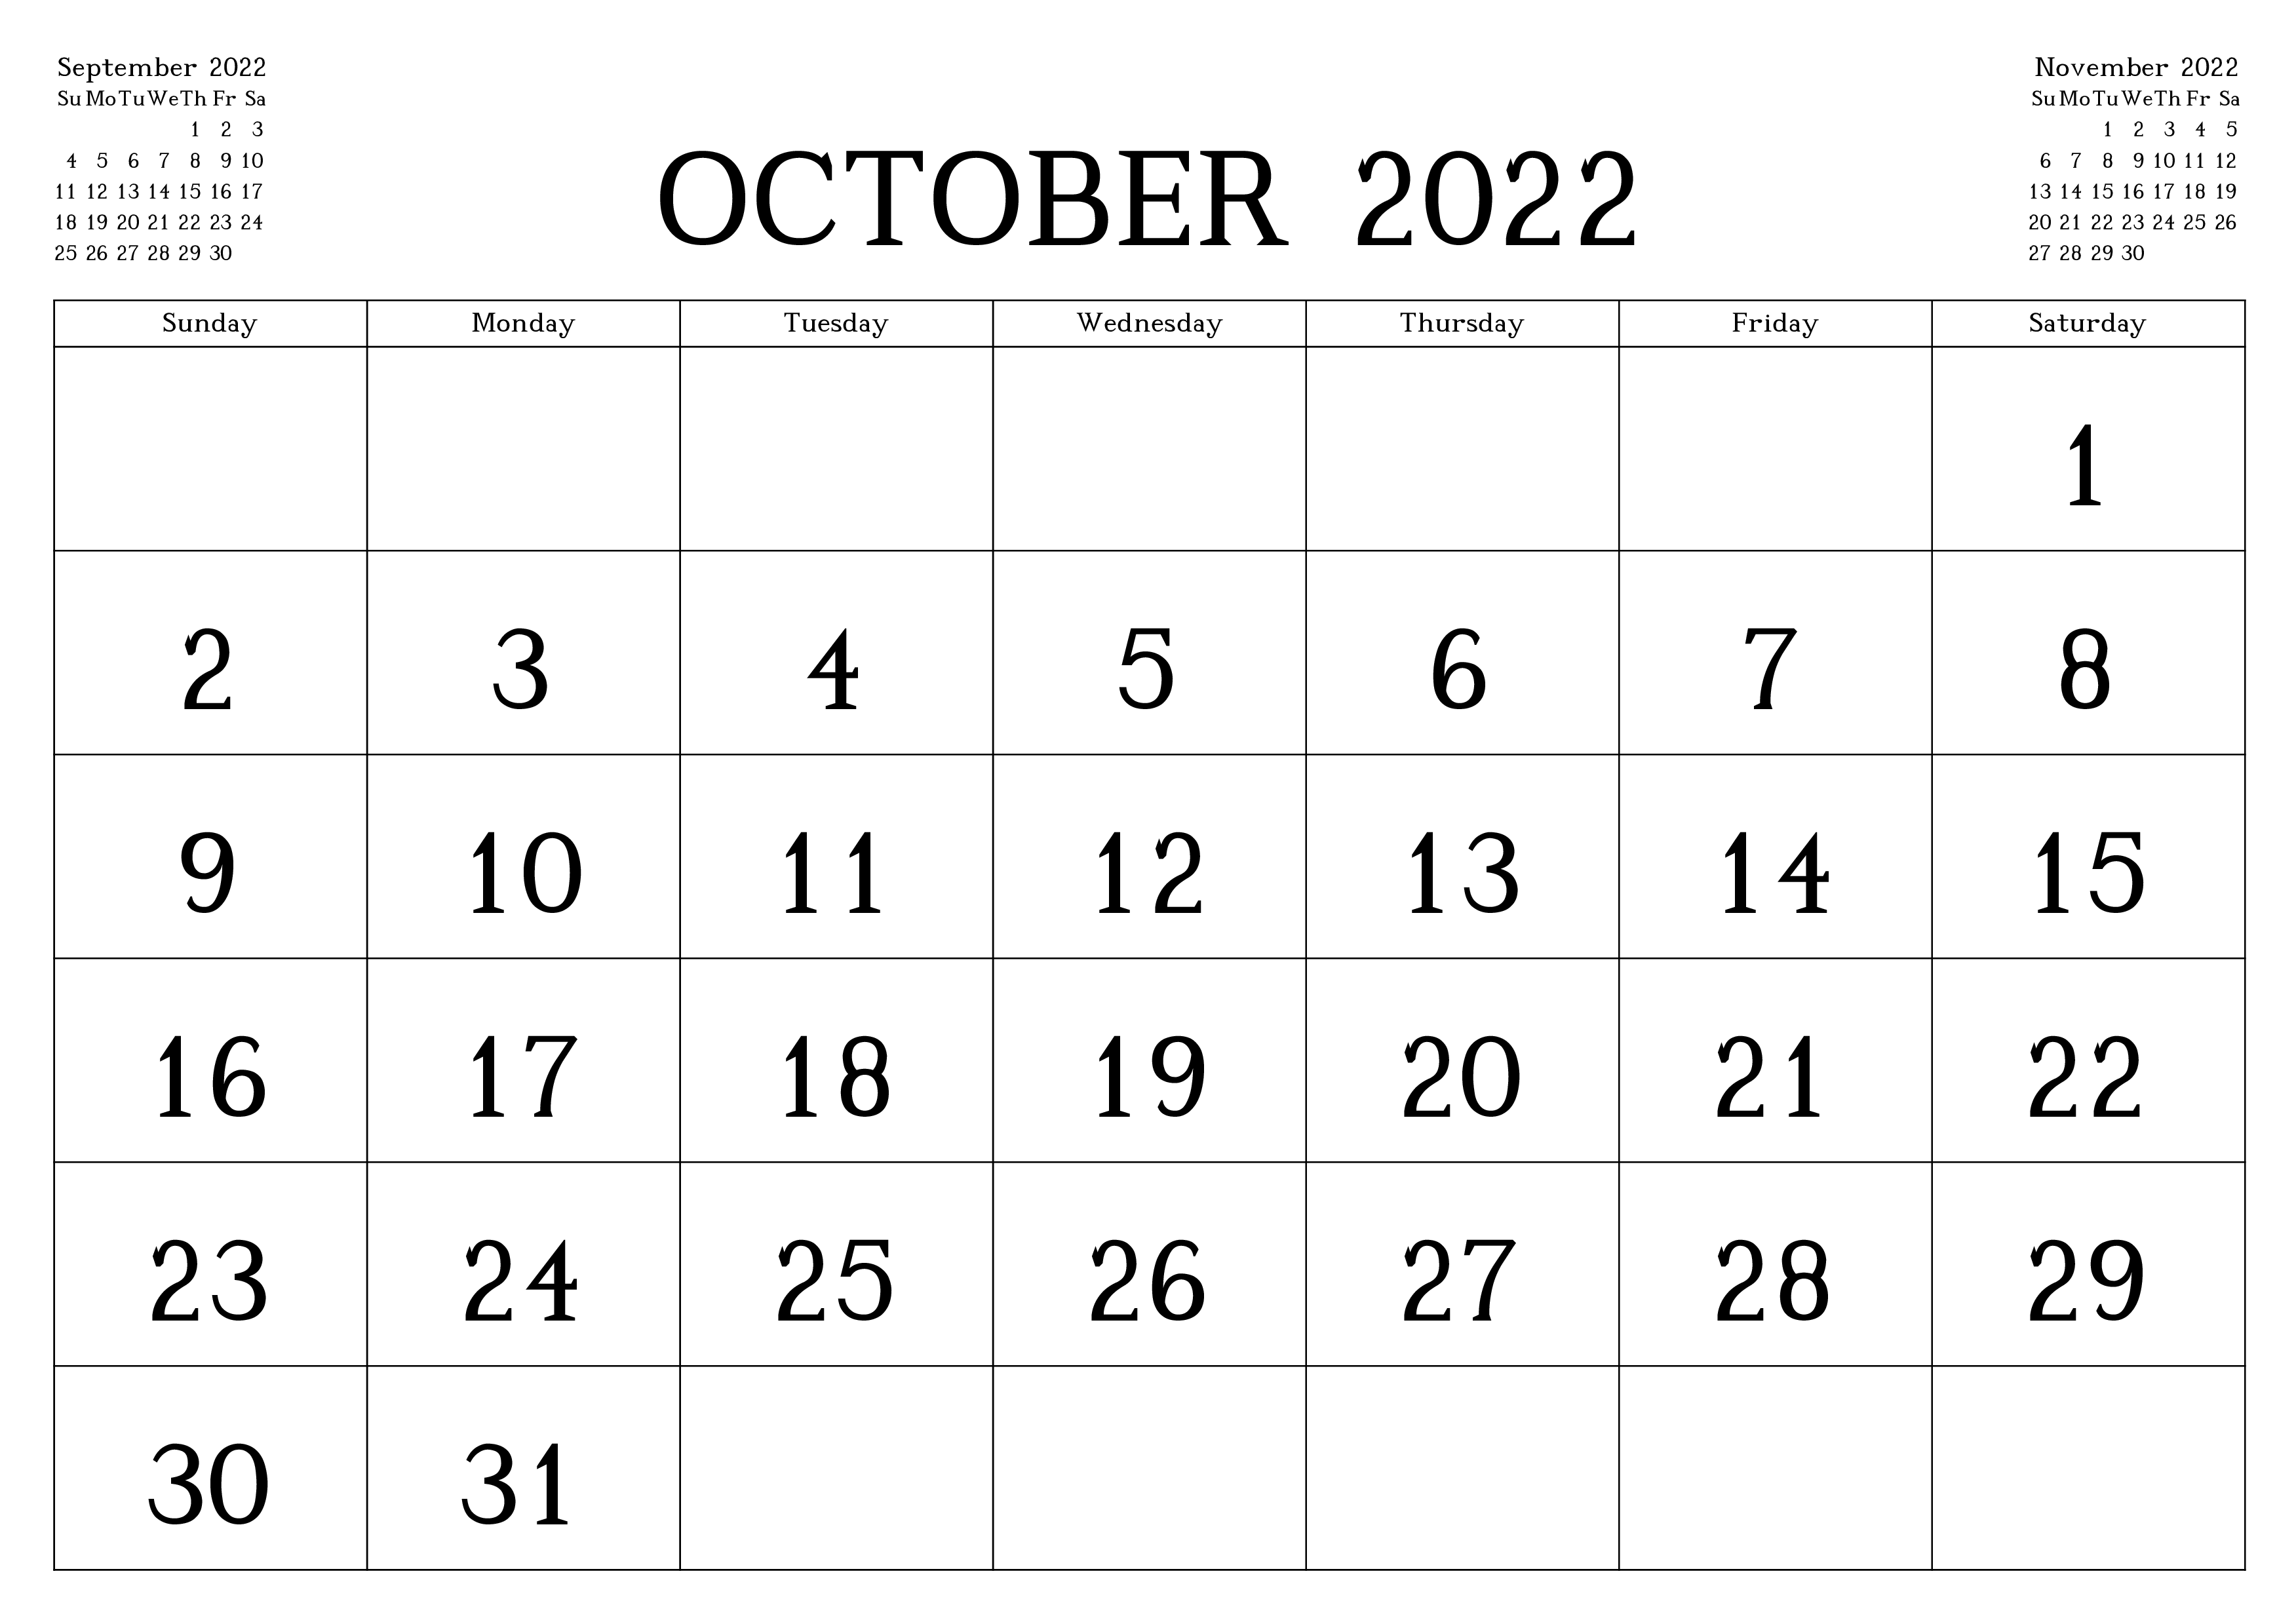 October 2022 Printable Calendar